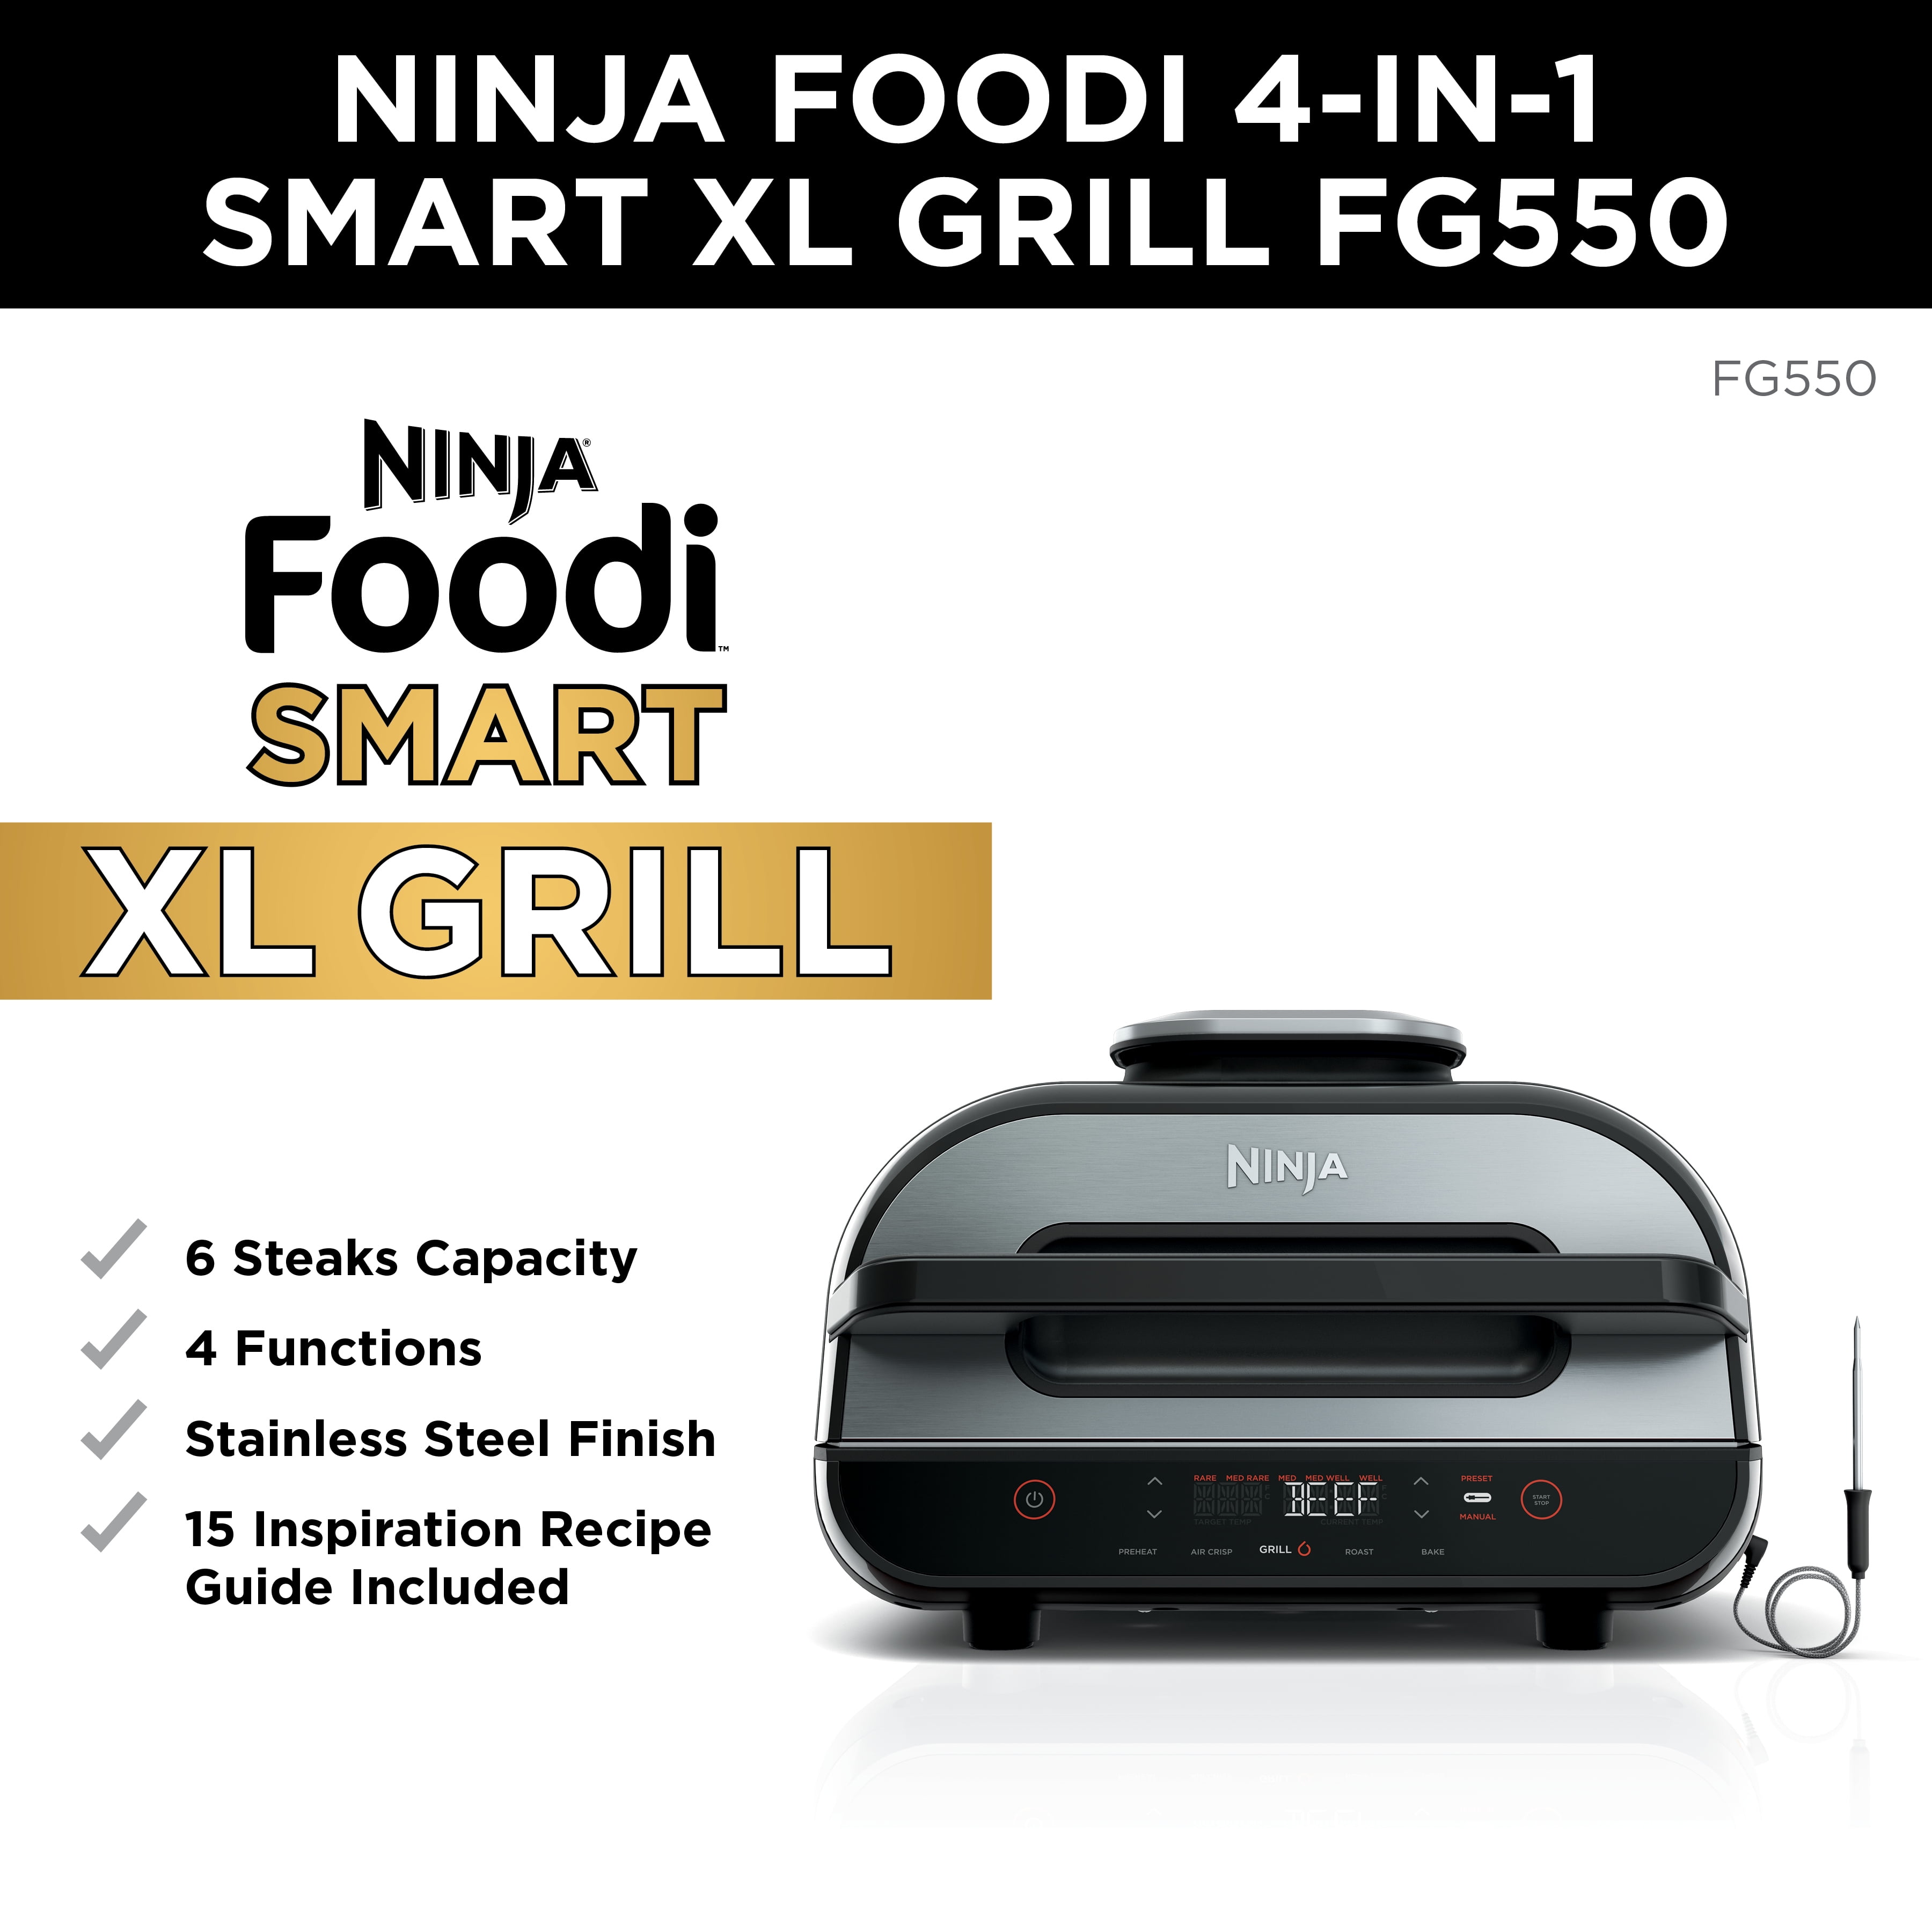 ninja foodi air fry smart xl grill cookbook: 1000 Affordable Savory Recipes  for Ninja Foodi Smart XL Grill and Ninja Foodi AG301 Grill to Air Fry Roas  (Paperback)